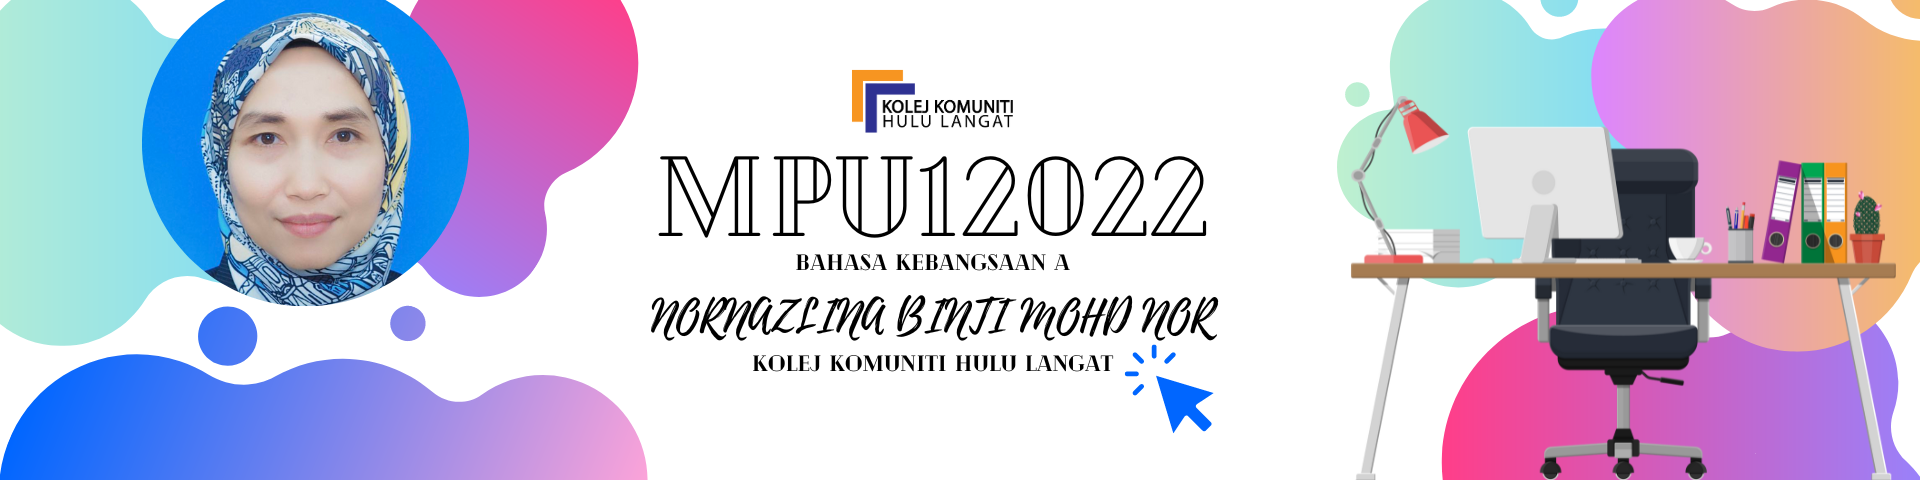 KKHL | MPU12022 BAHASA KEBANGSAAN